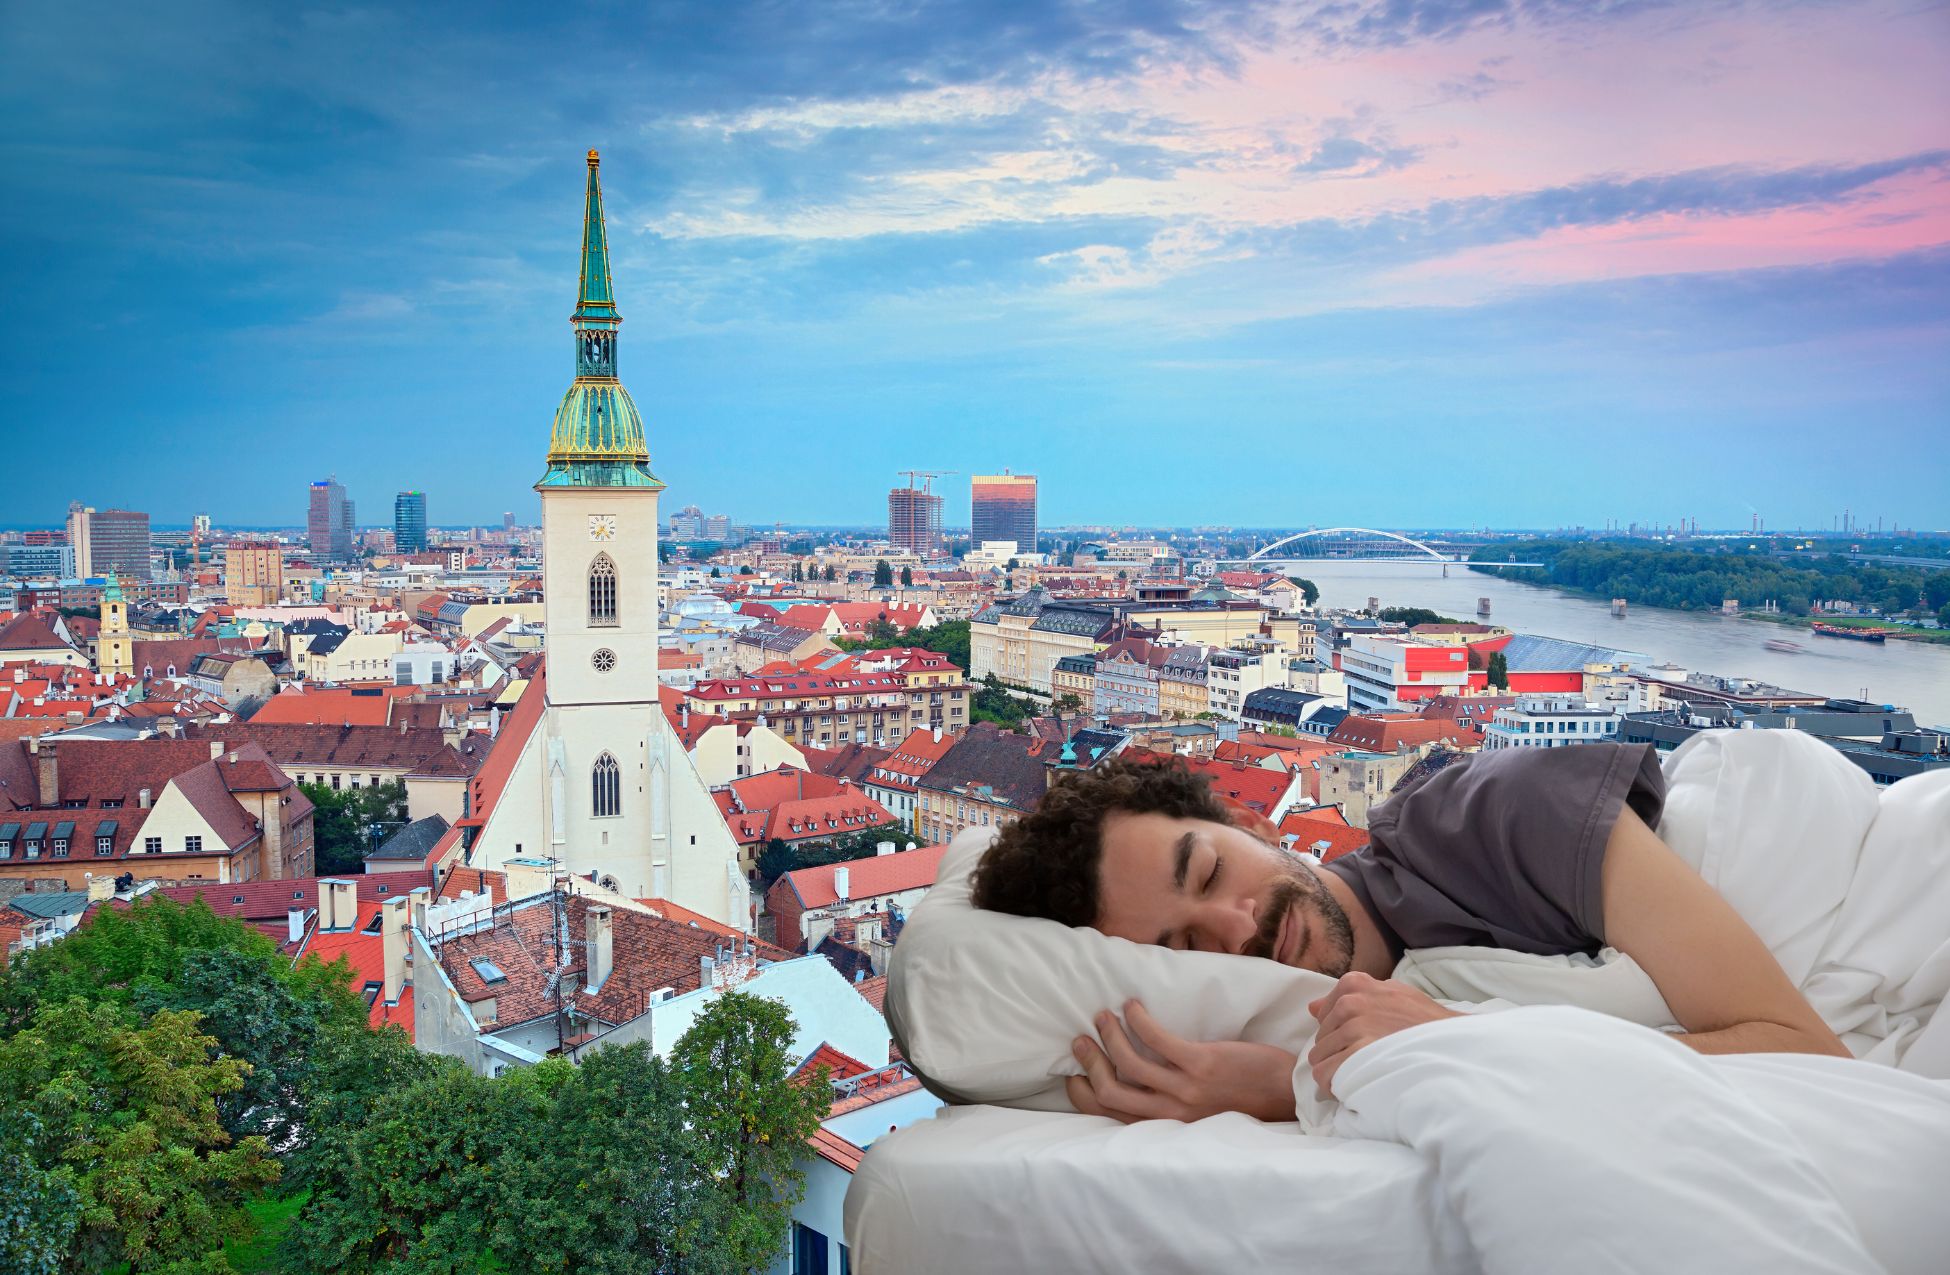 Best Hotels In Stuttgart Swanky Stays For Sophisticated Schnitzel Seekers